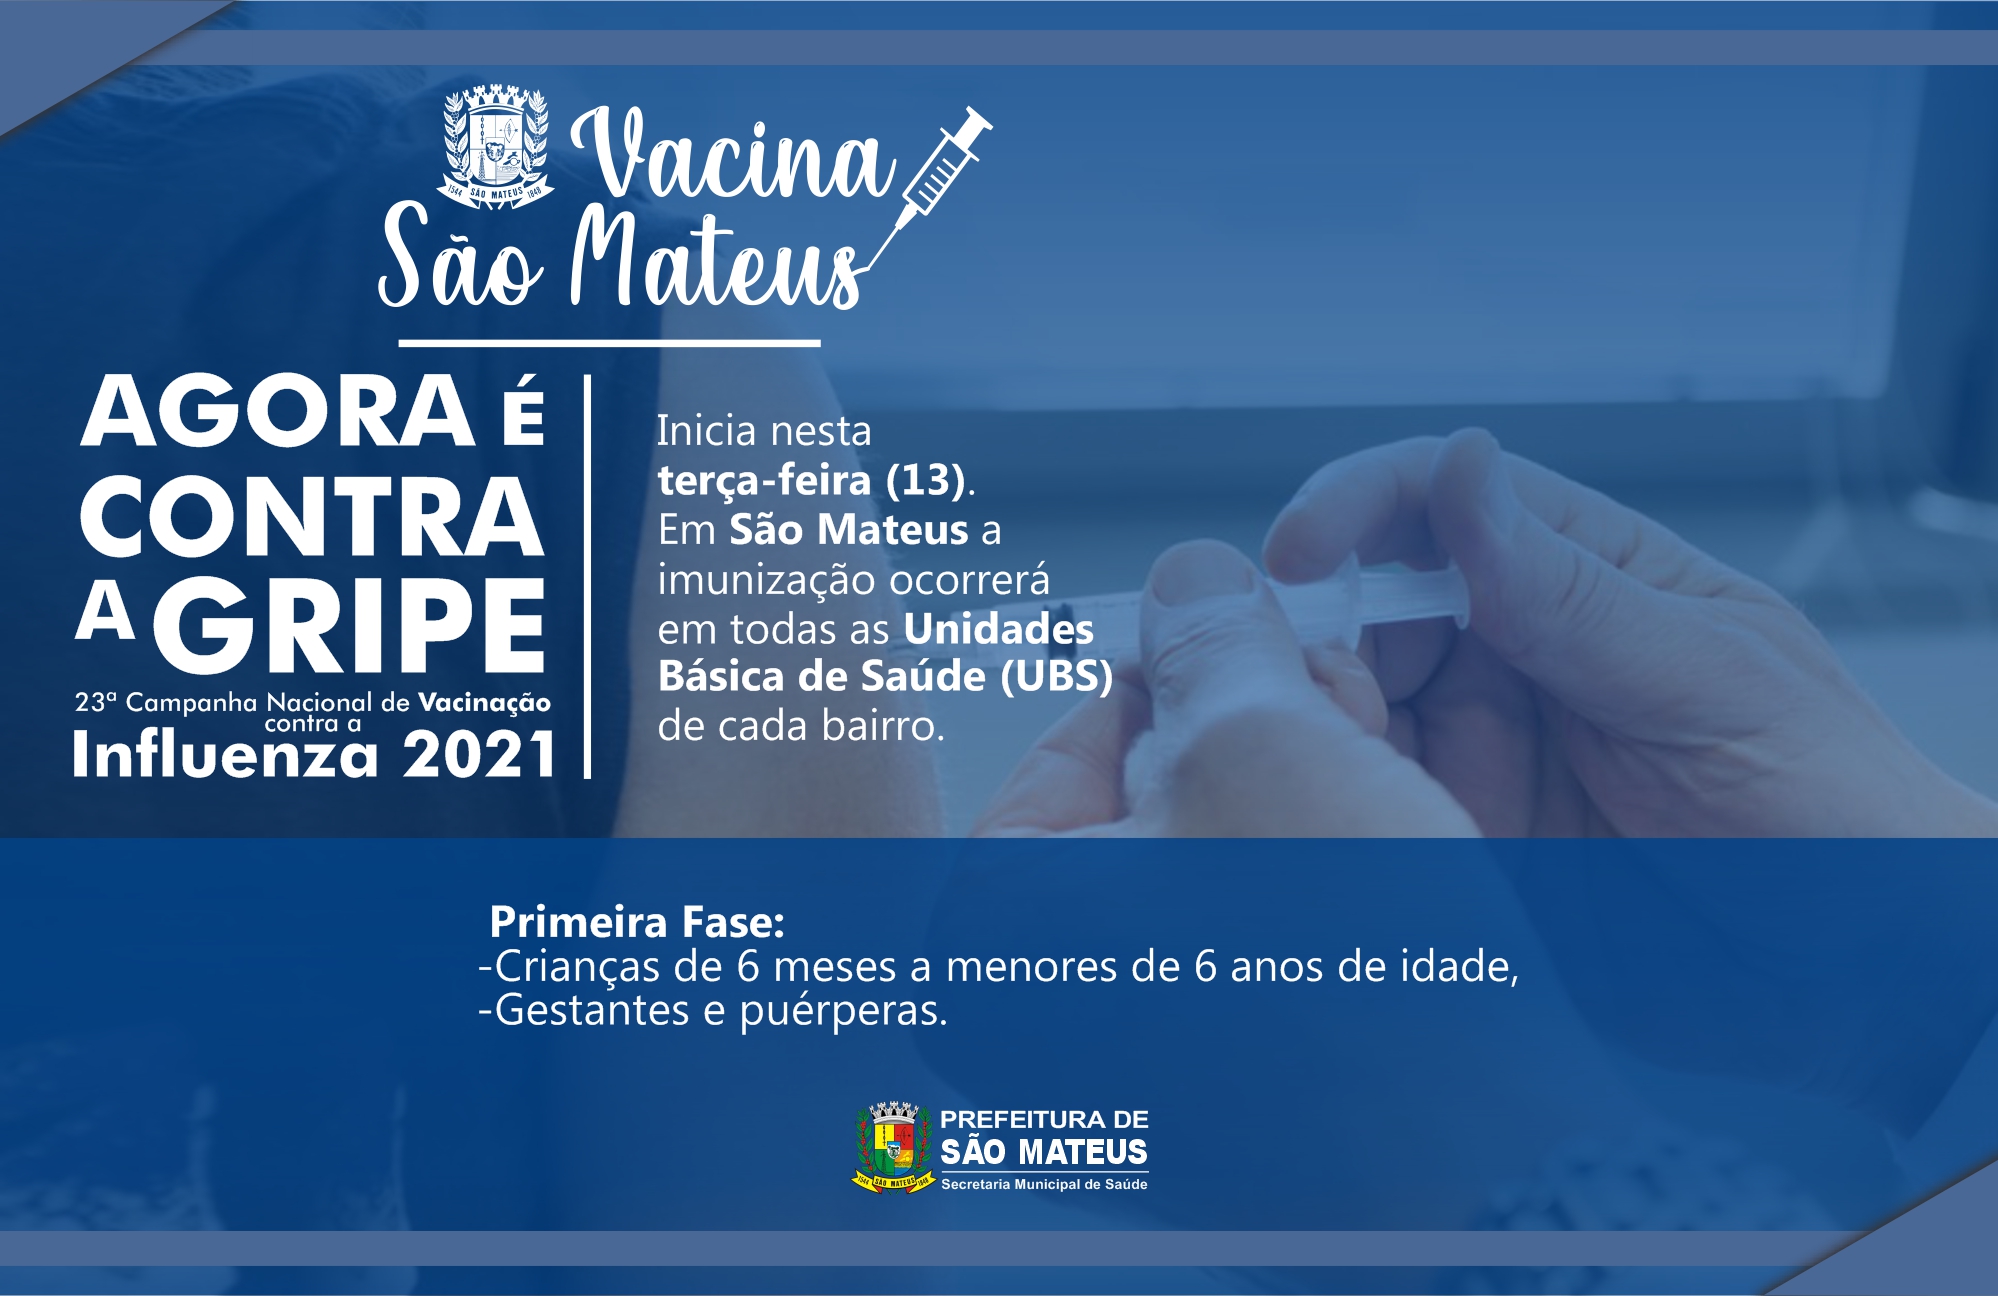 23ª CAMPANHA NACIONAL DE VACINAÇÃO CONTRA A INFLUENZA 2021 COMEÇA NESSA TERÇA (13) EM SÃO MATEUS